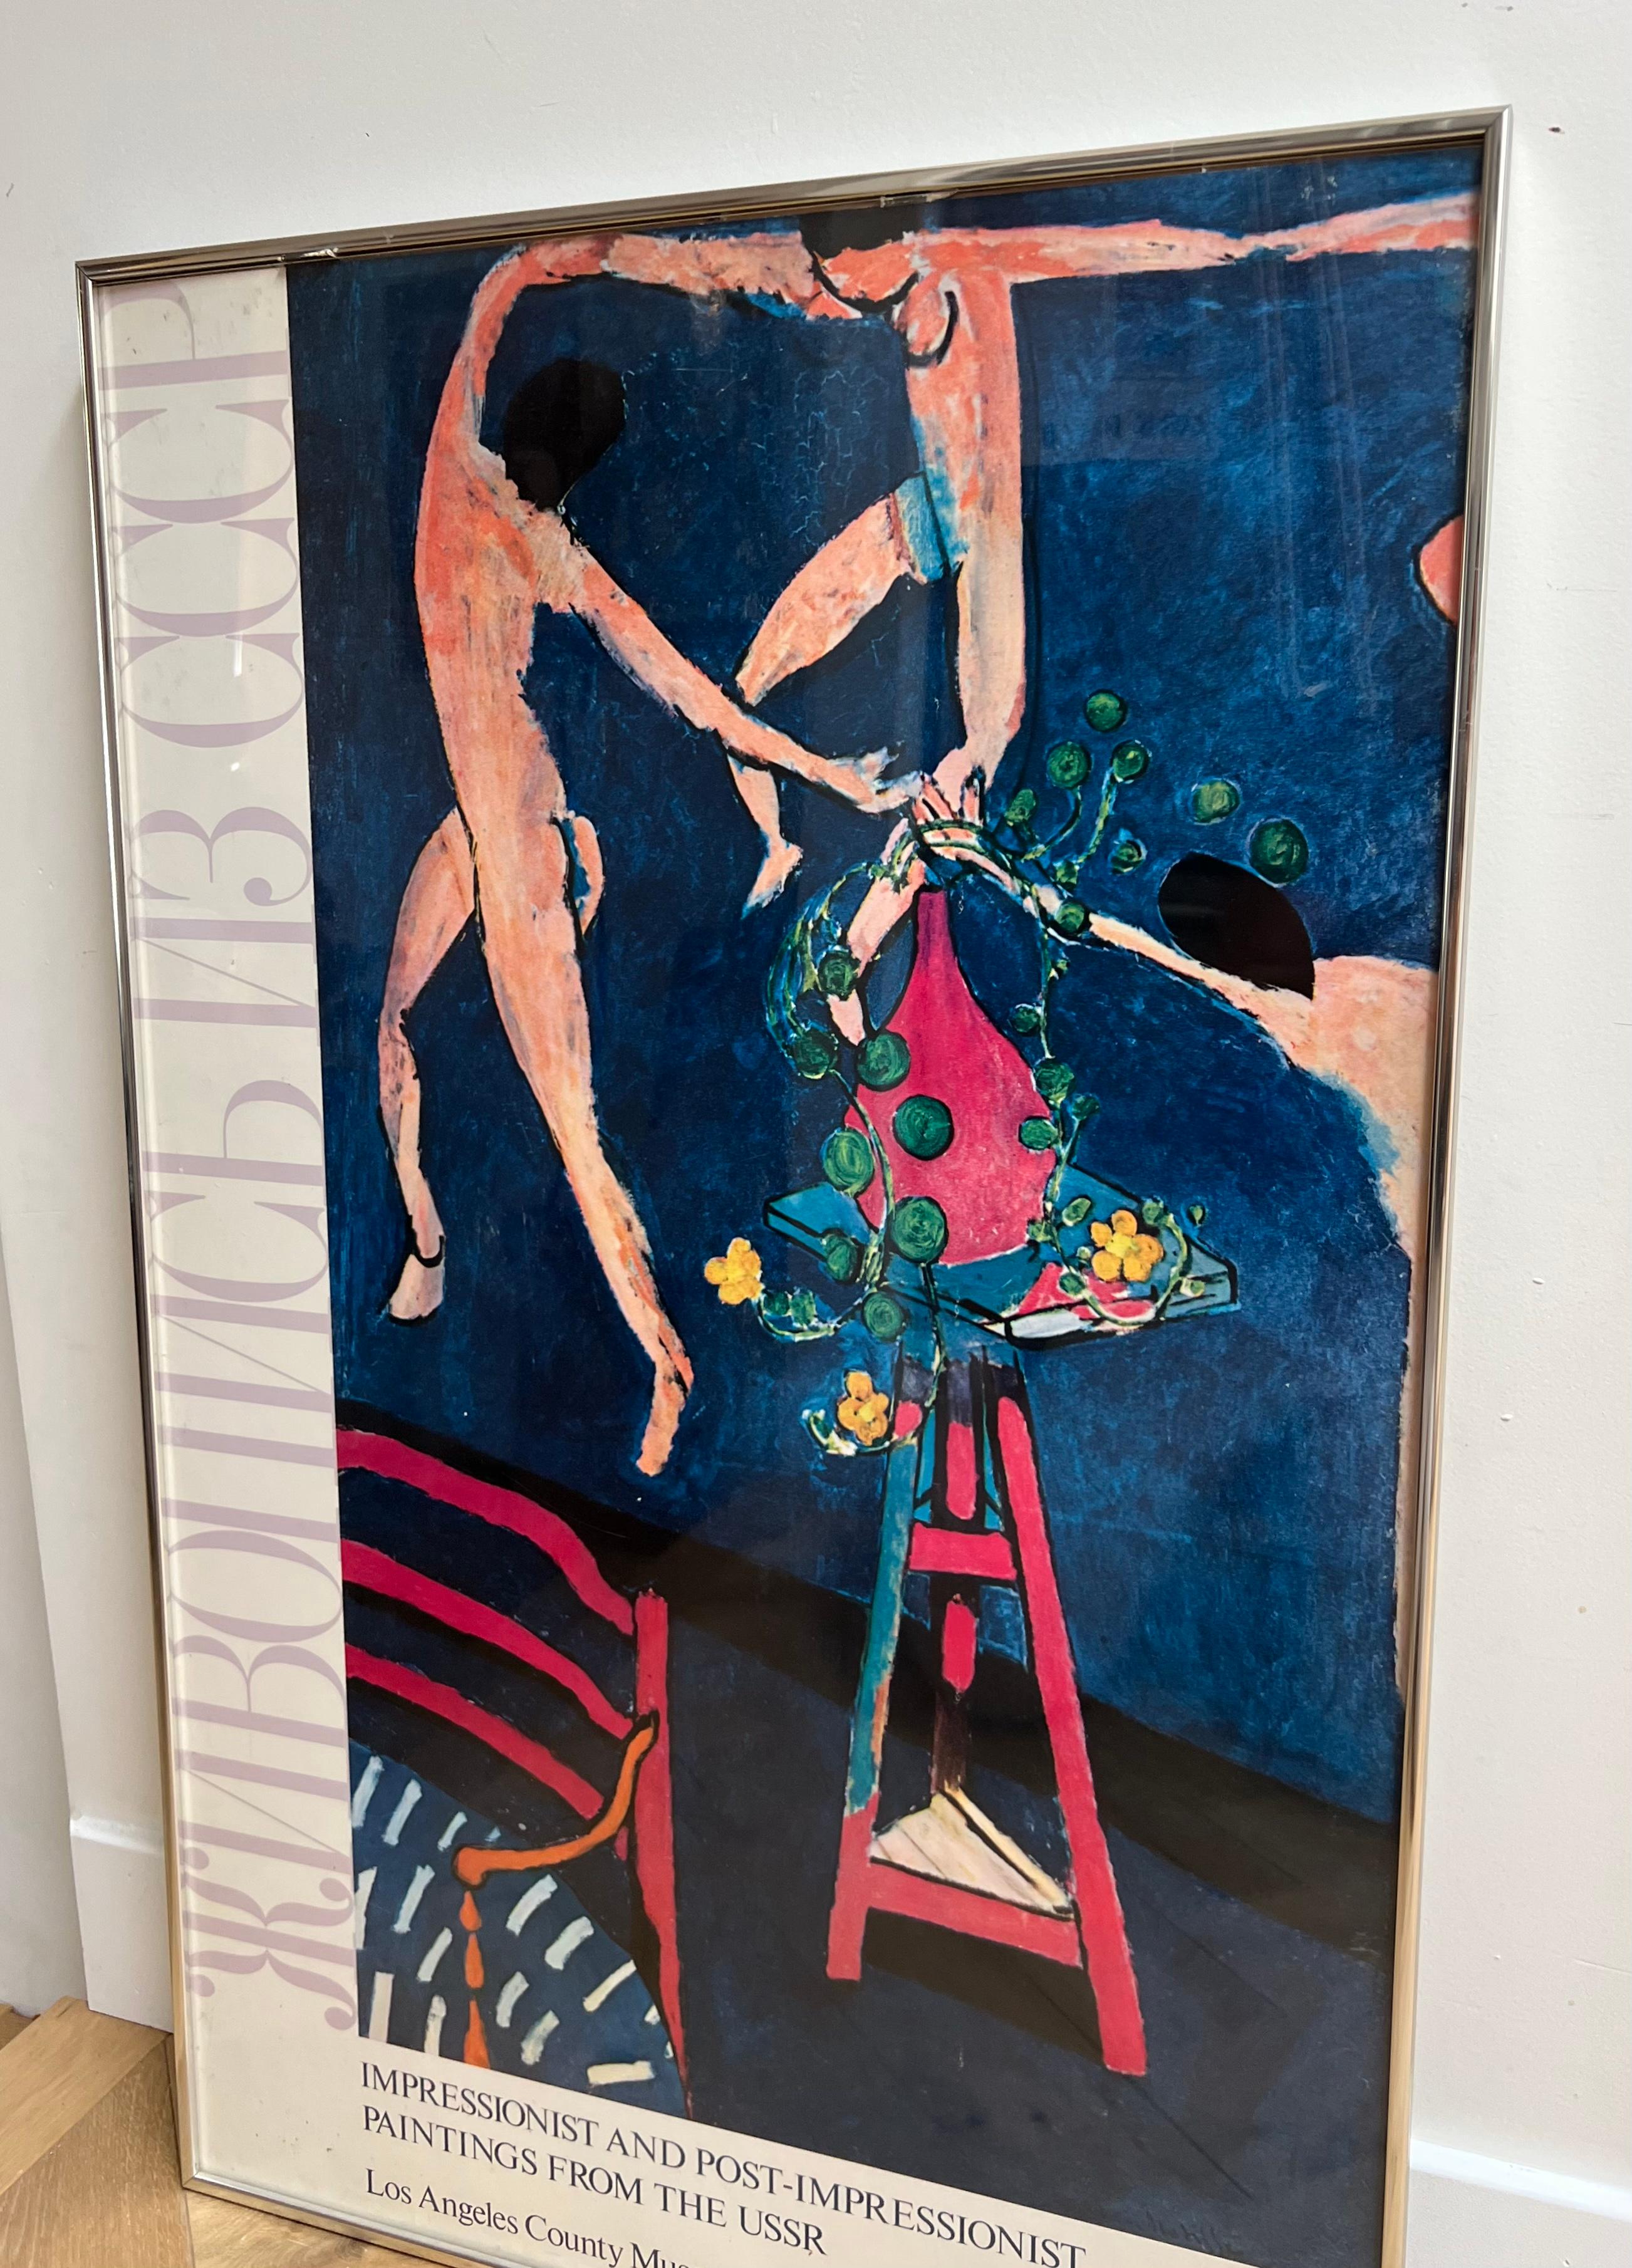 Metal Vintage USSR Matisse exhibition poster, framed behind glass, 1973